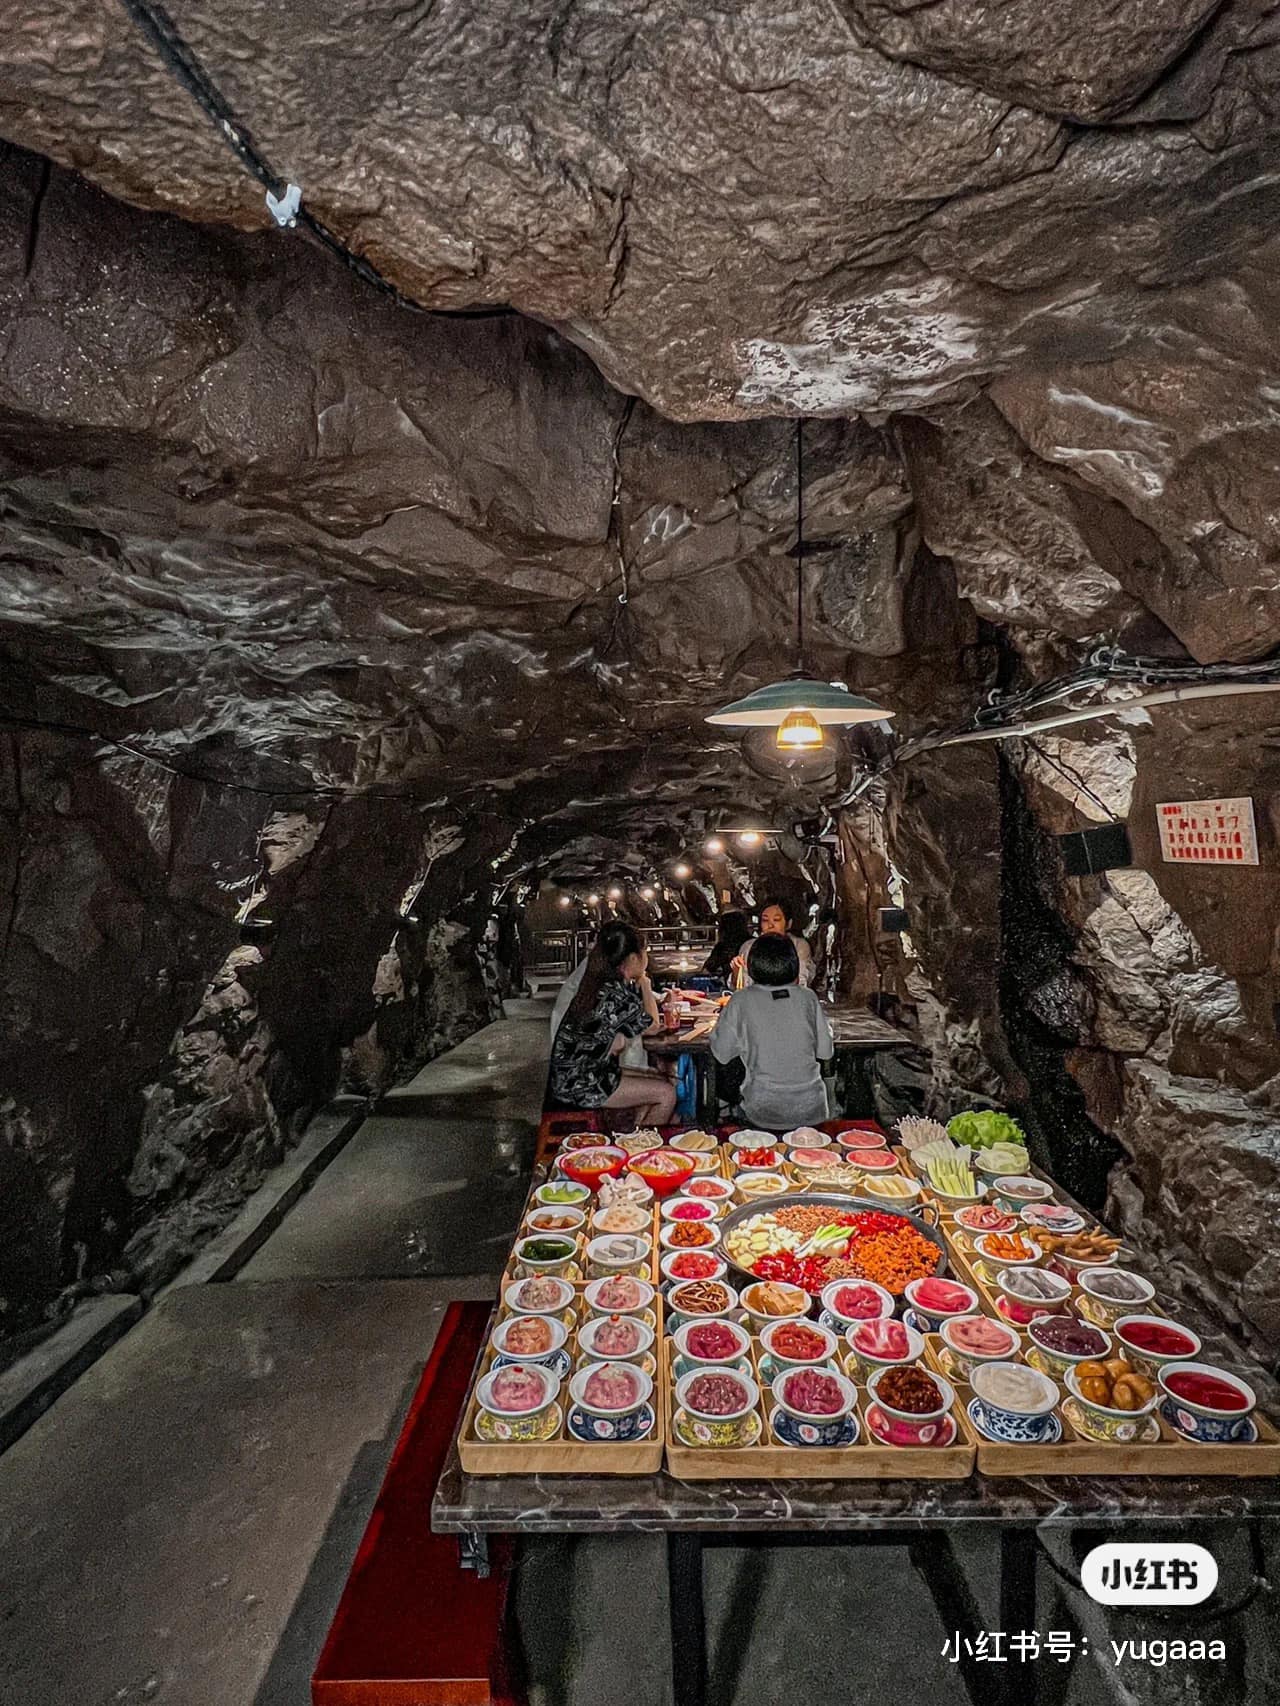 Độc đáo với nhà hàng lẩu dưới hầm trú ẩn hút khách tại Trùng Khánh, Trung Quốc - Ảnh 4.